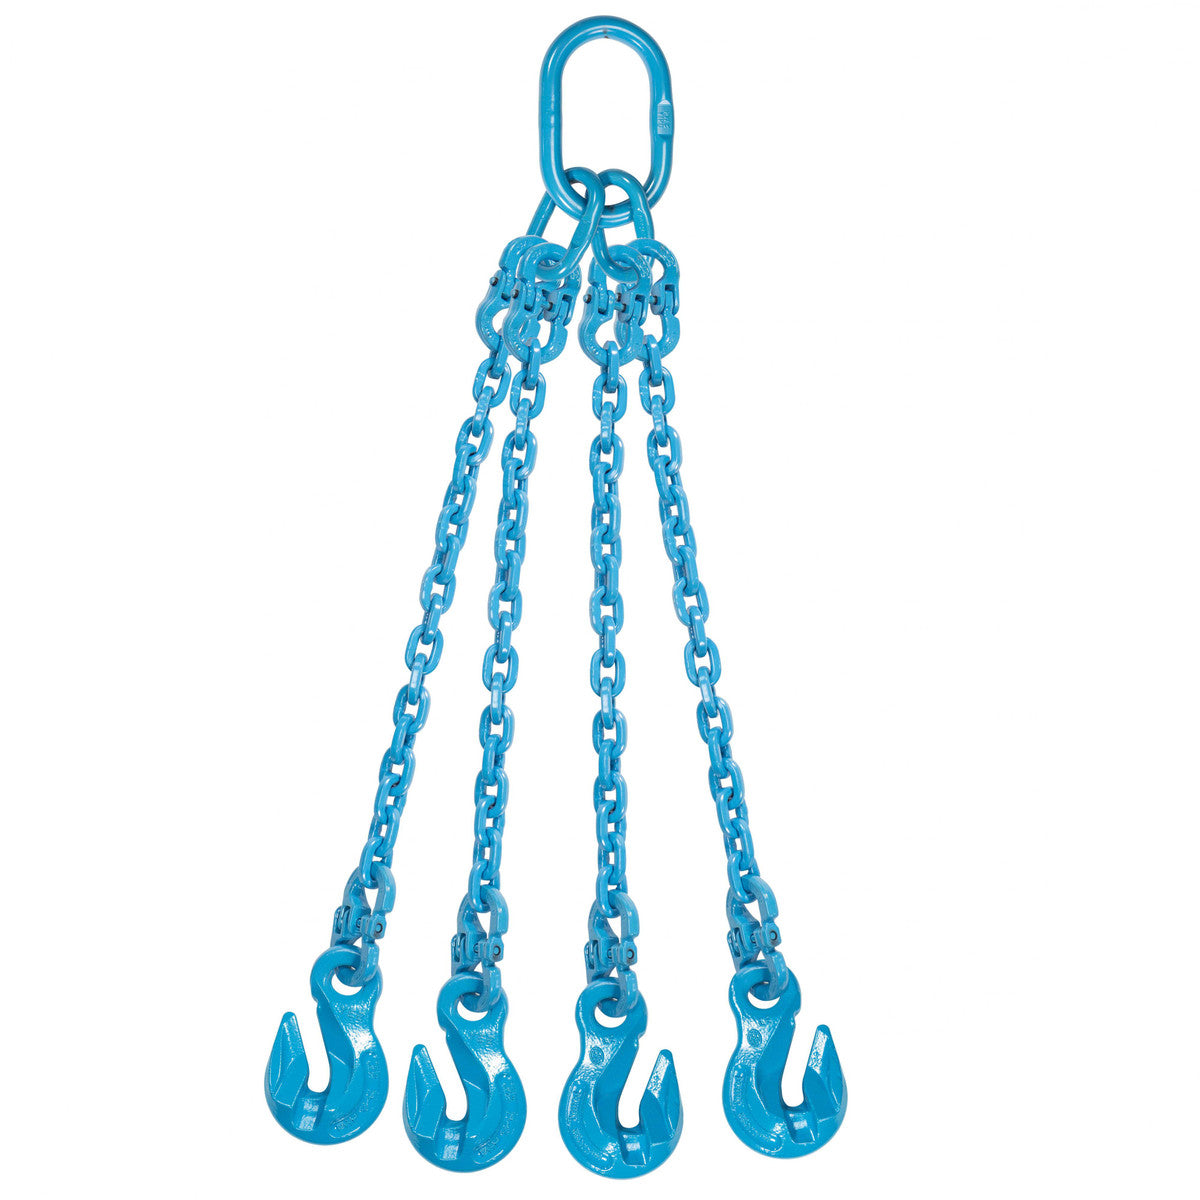 9/32" x 10' - Pewag 4 Leg Chain Sling w/ Grab Hooks - Grade 120